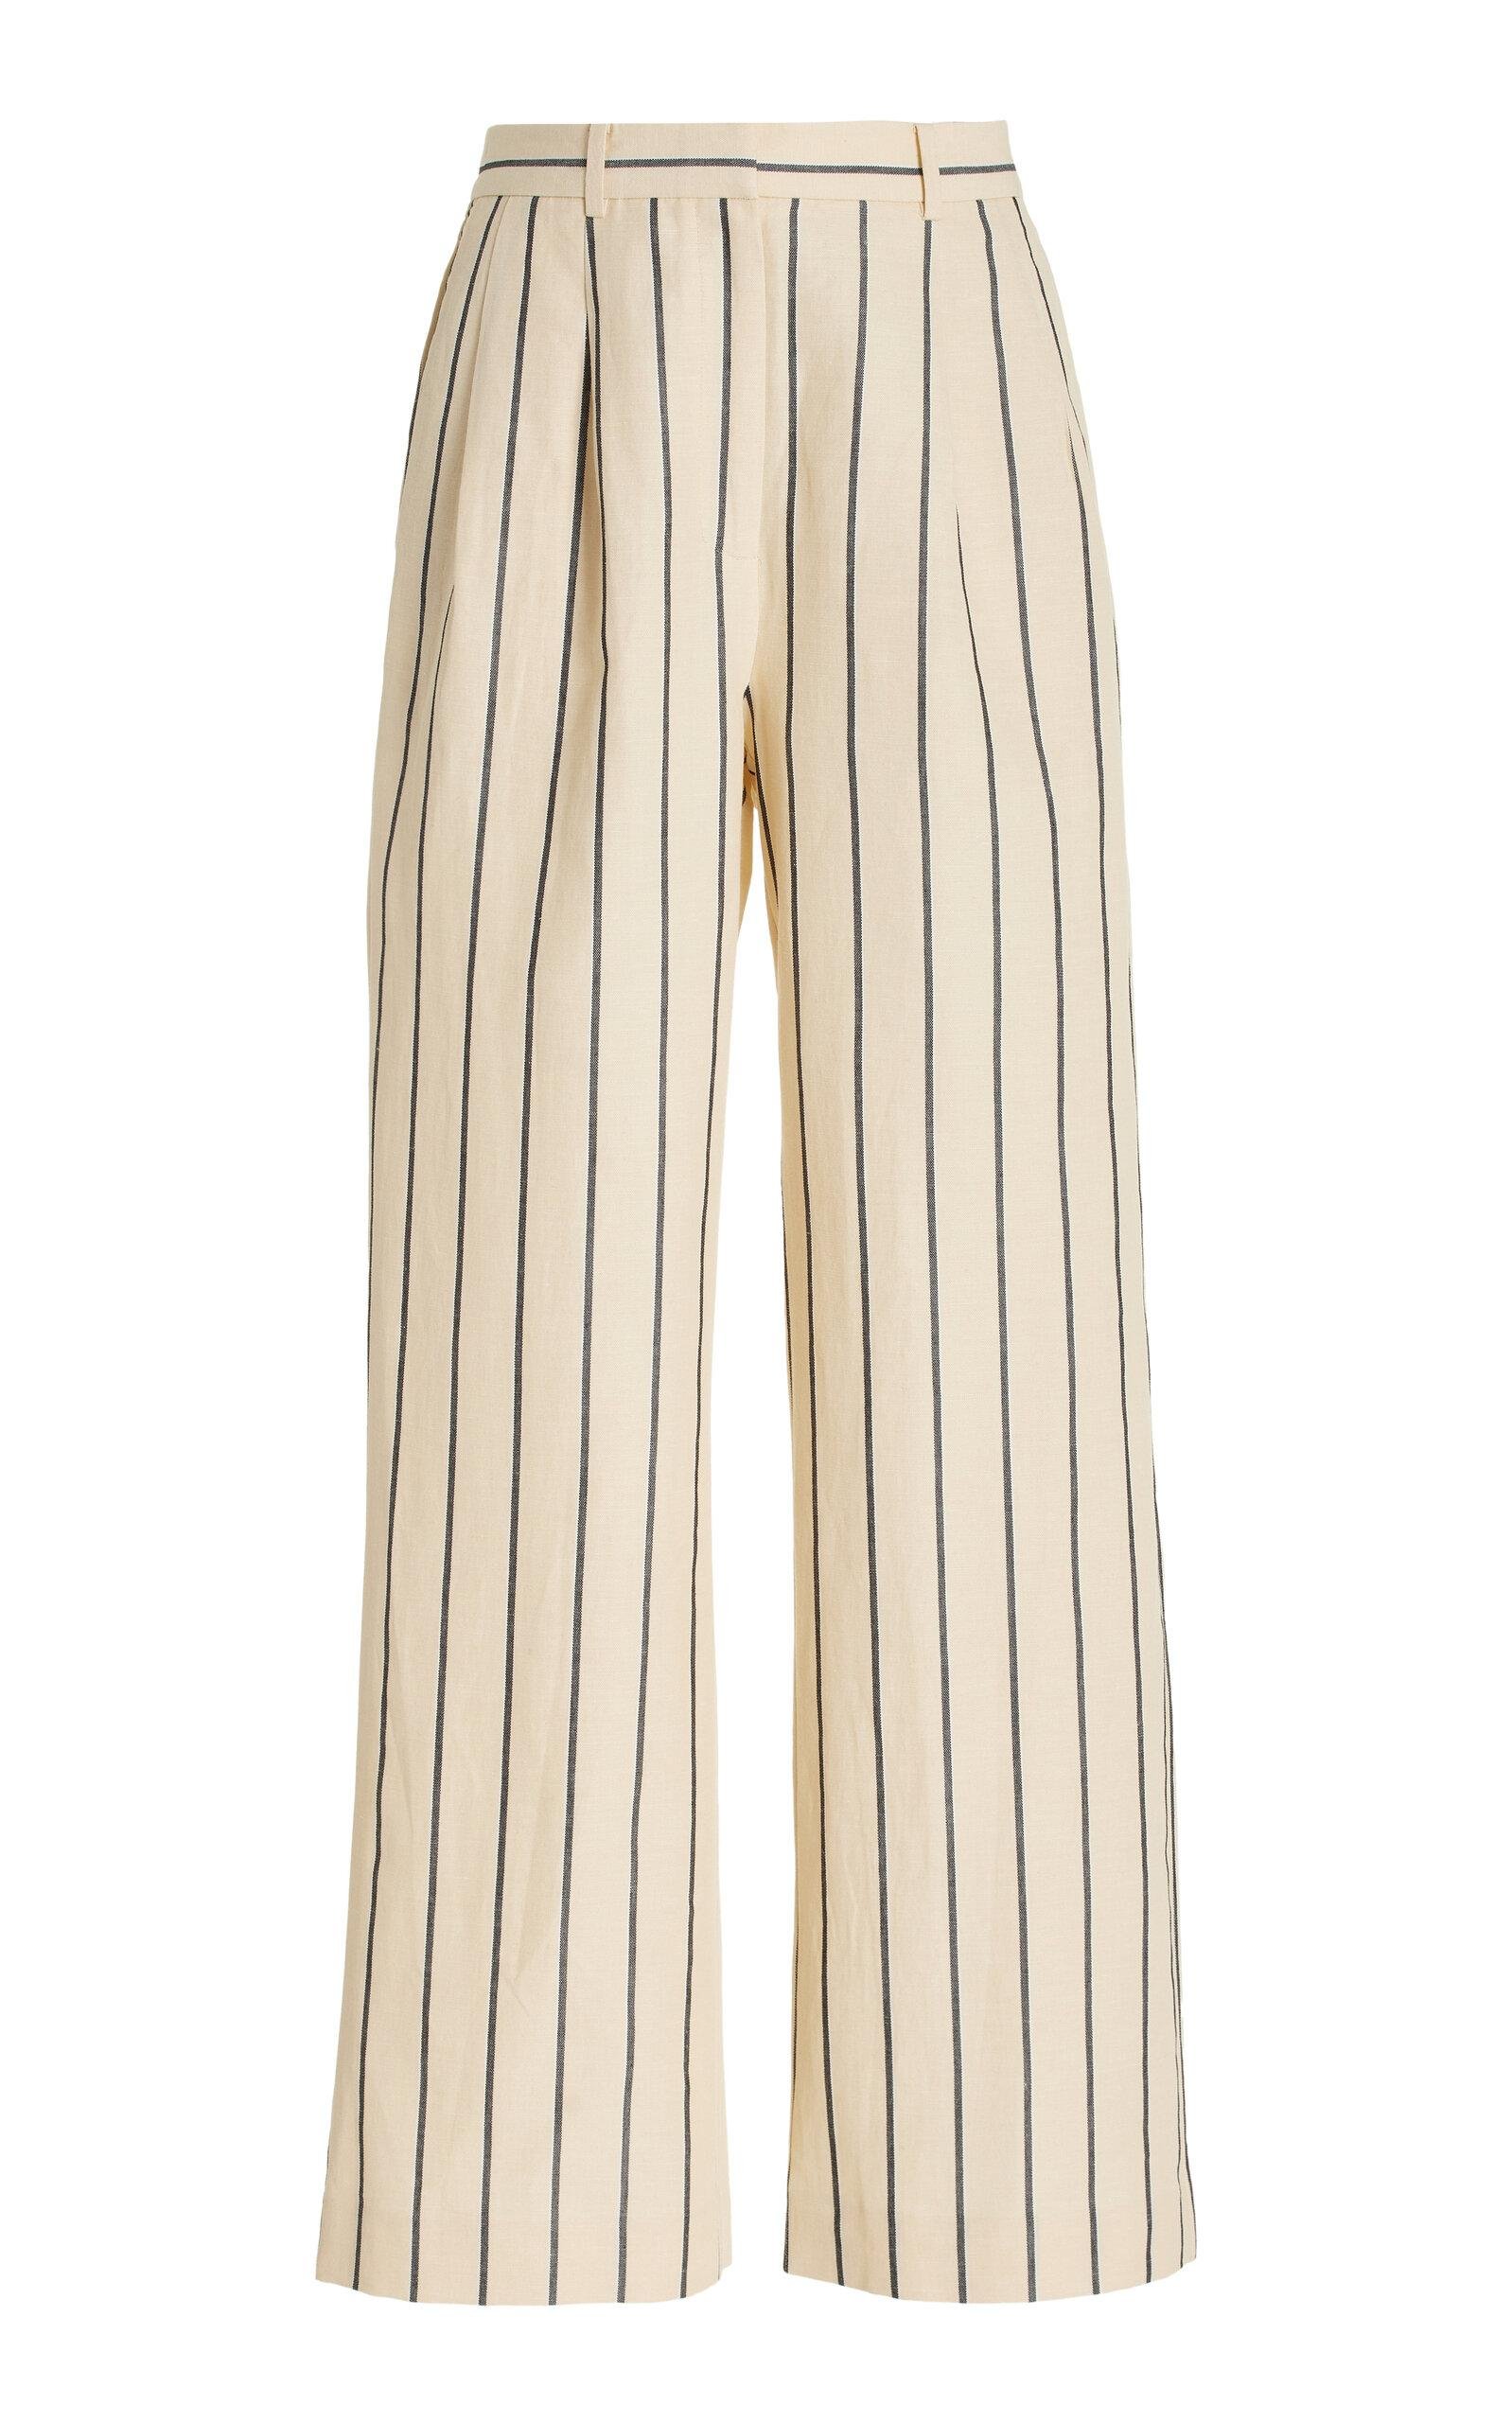 Jenni Kayne - Jones Striped Cotton-Blend Wide-Leg Pants - White - US 10 - Moda Operandi by JENNI KAYNE